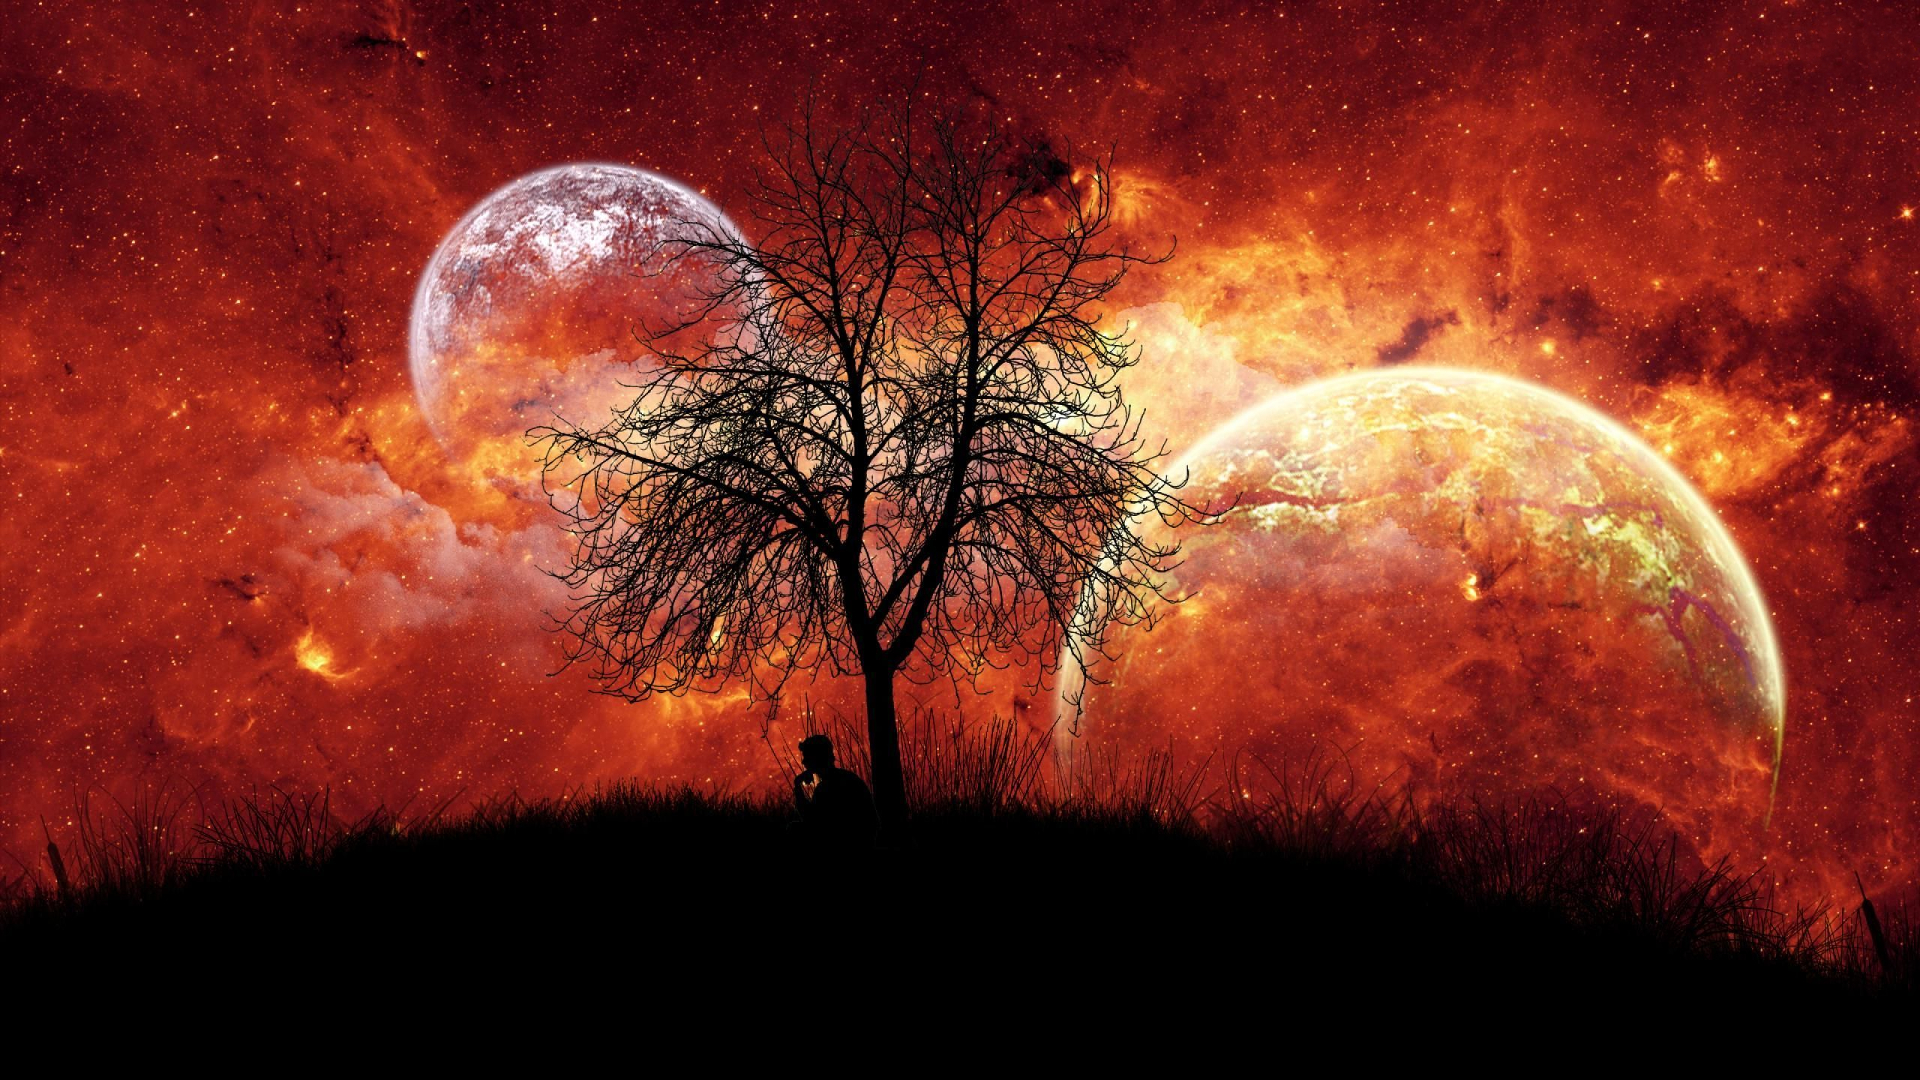 Скачать обои бесплатно Звезды, Луна, Силуэт, Красный, Дерево, Планета, Фантазия, Художественные картинка на рабочий стол ПК